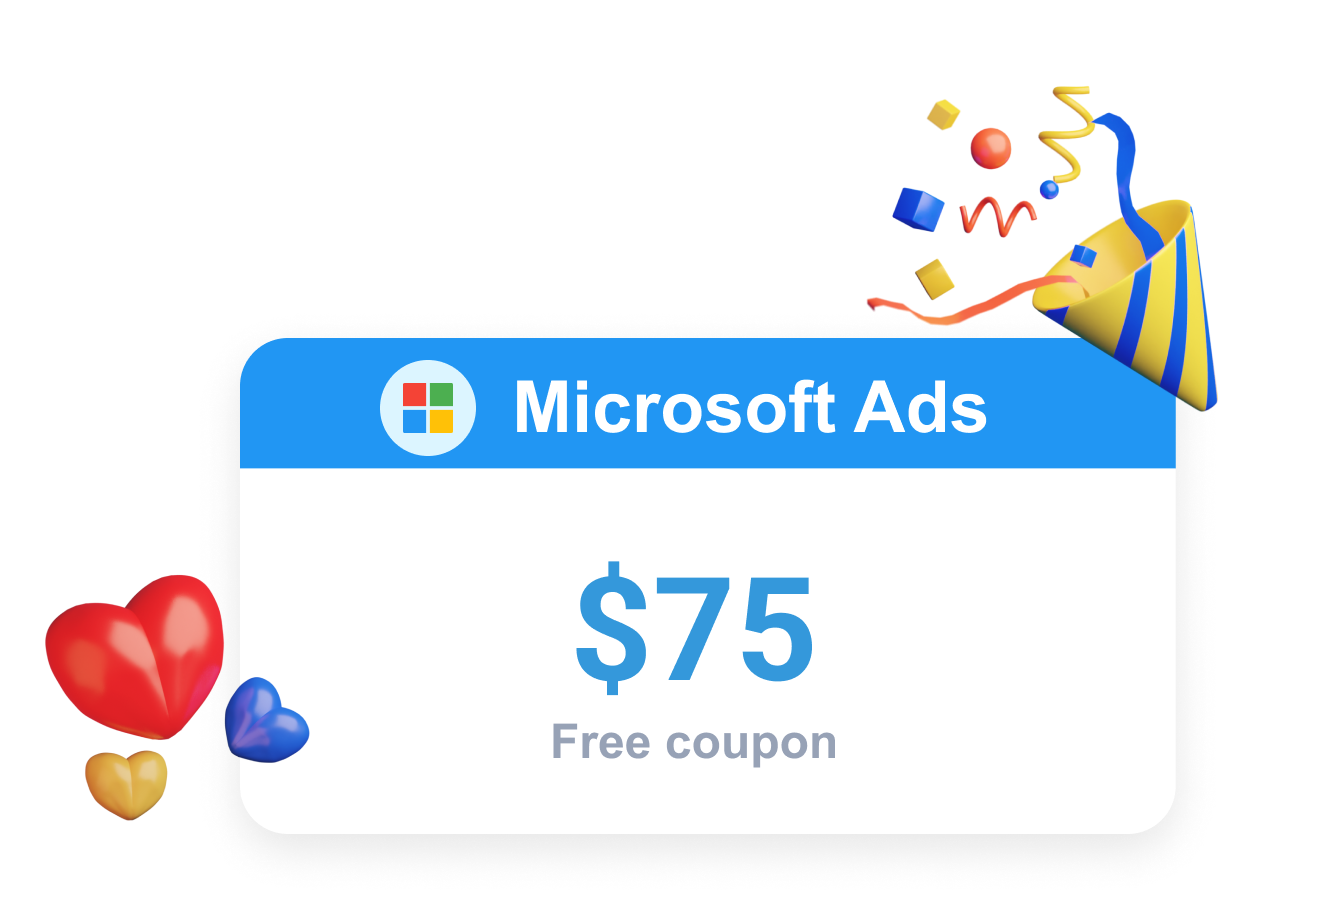 Clever Ads 以Bing 免费优惠券的形式提供微软 促销活动。Ads Ads 